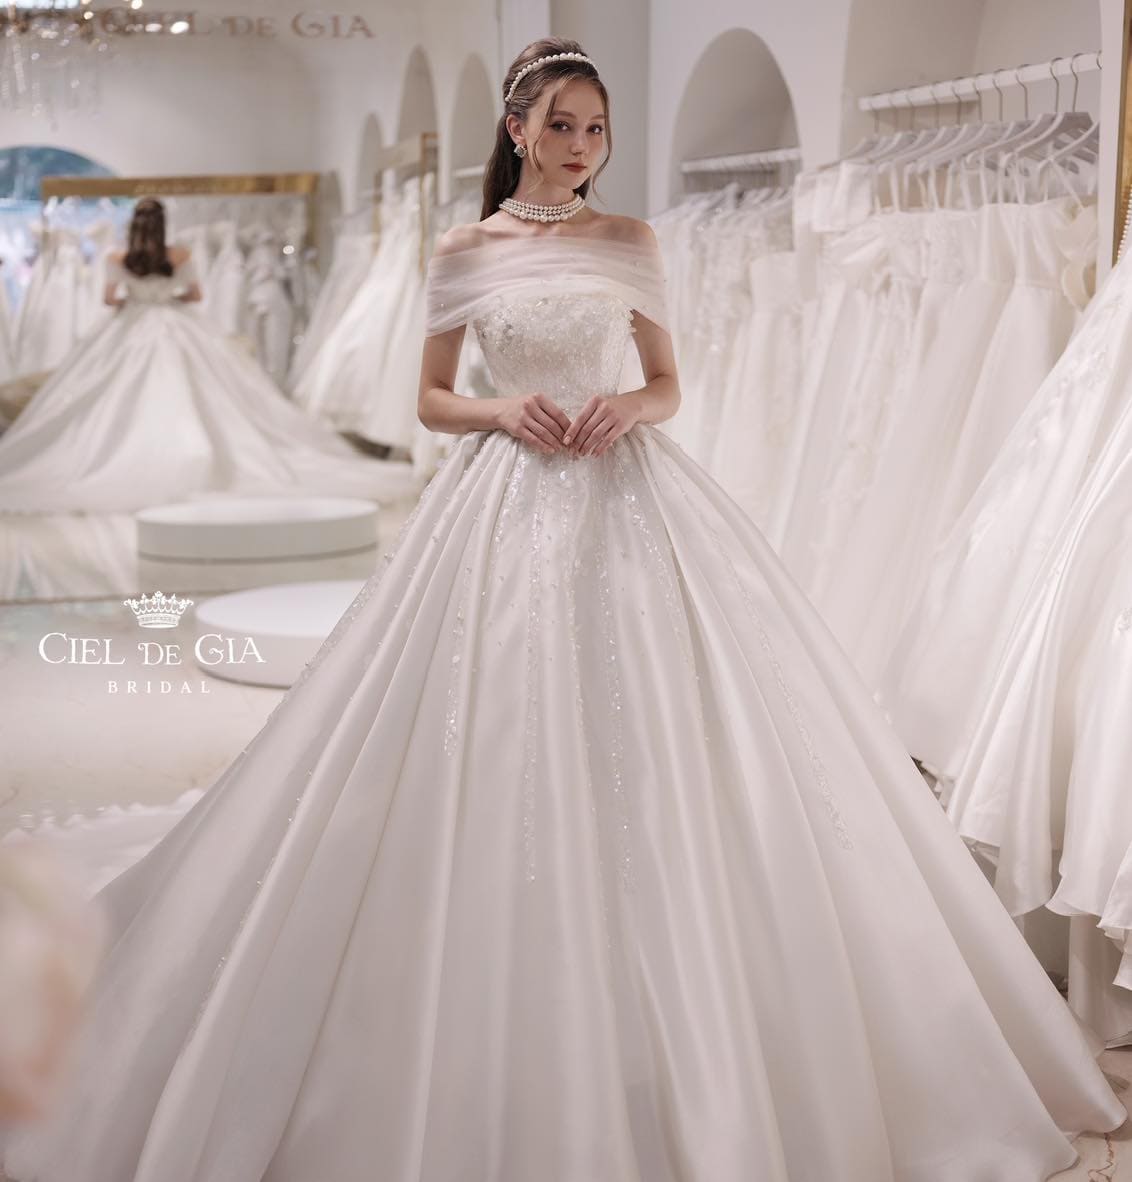 Ciel de Gia Bridal studio cho thuê váy cưới đẹp nhất ở Hai Bà Trưng Hà Nội